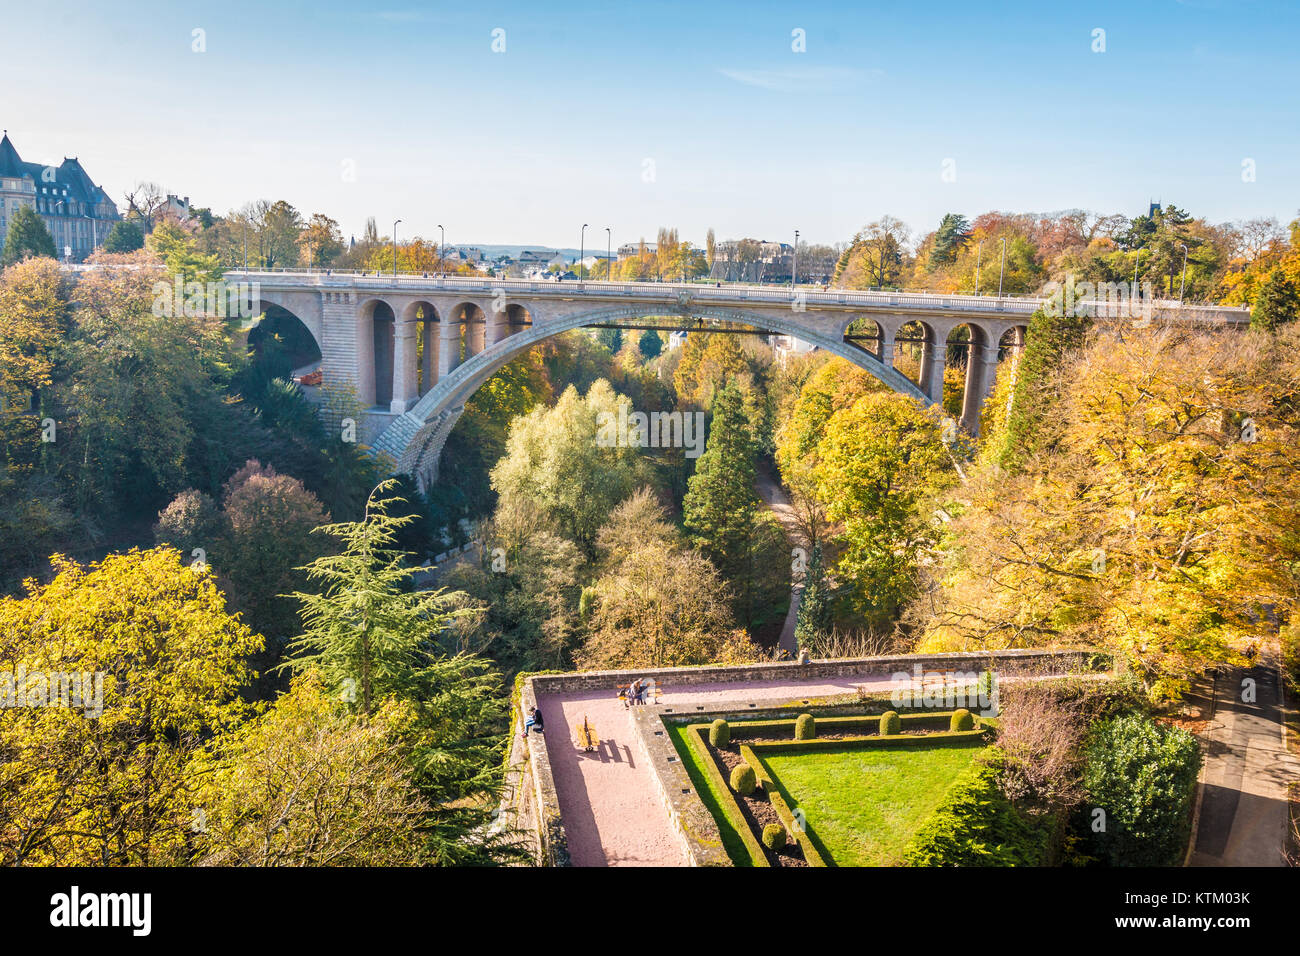 Luxembourg city Adolphe bridge Stock Photo